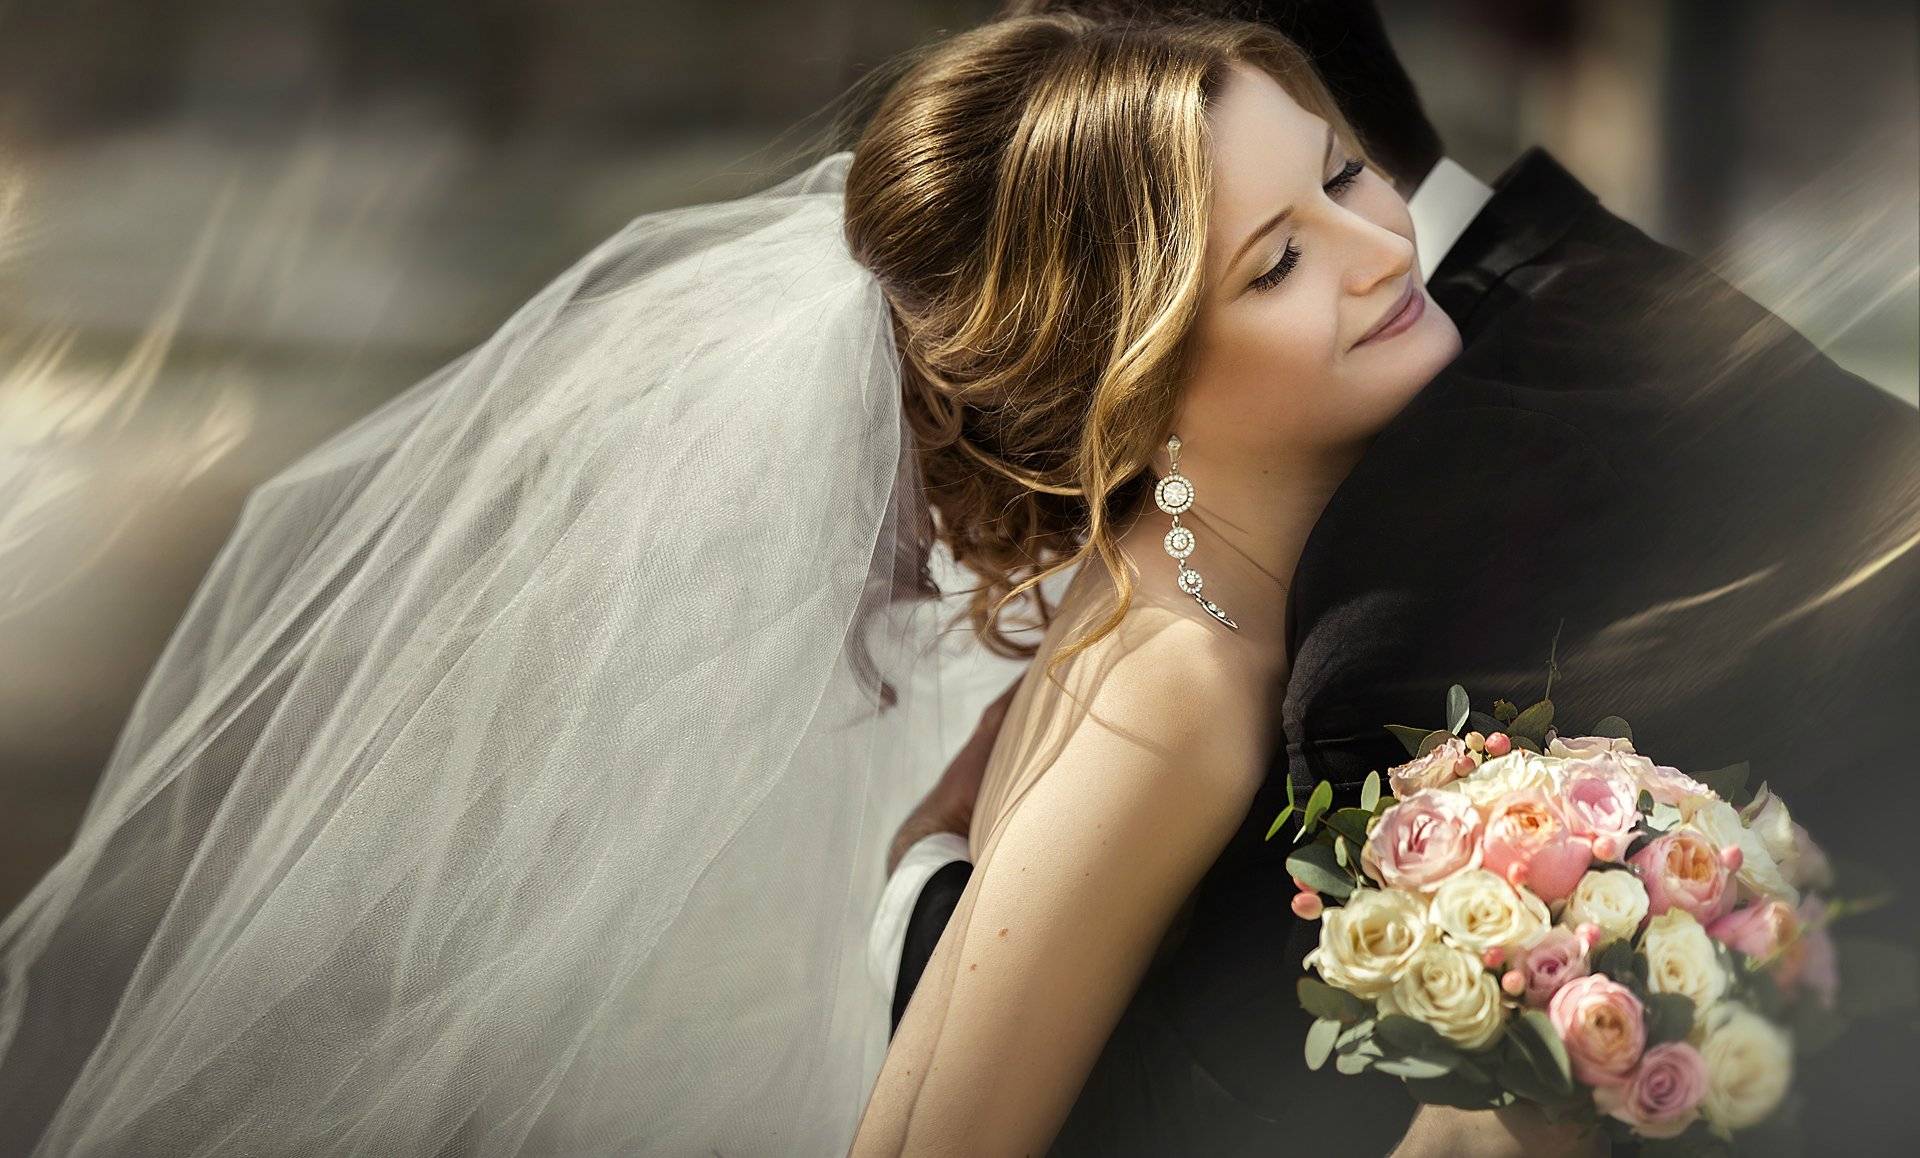 Свадебная фата — как выбрать этот важный элемент наряда